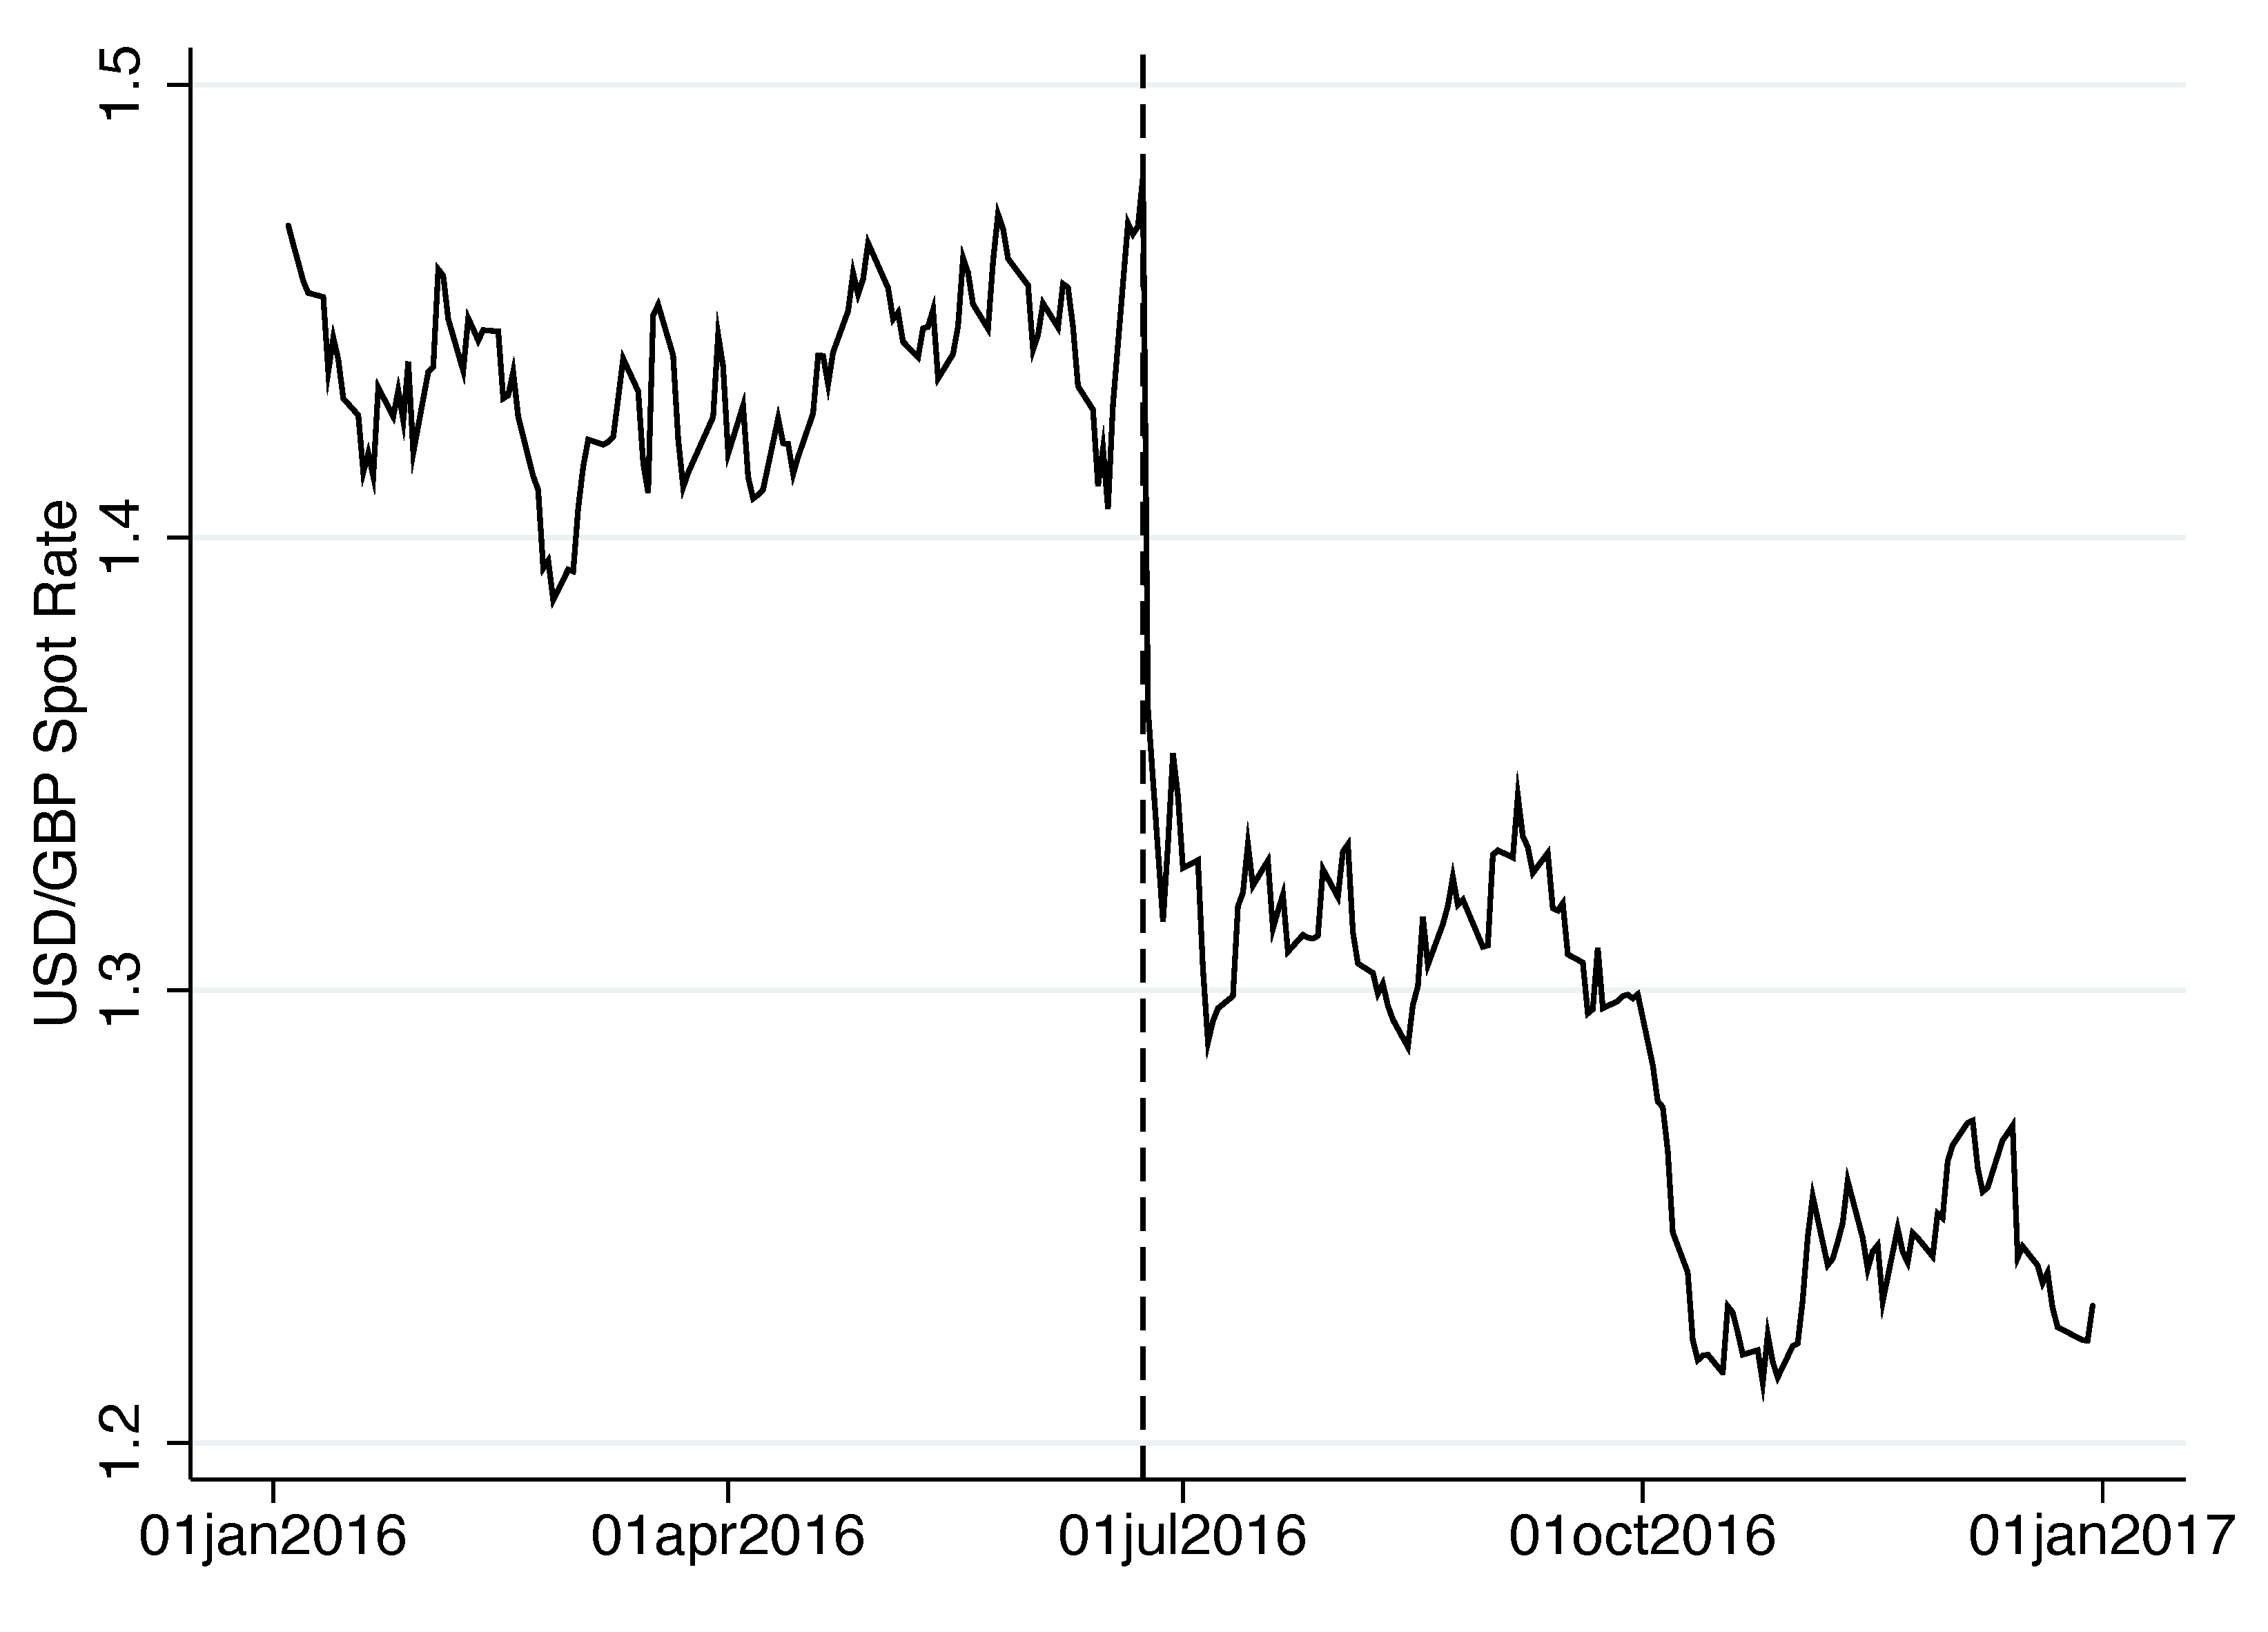 Figure 1b Spot exchange rate